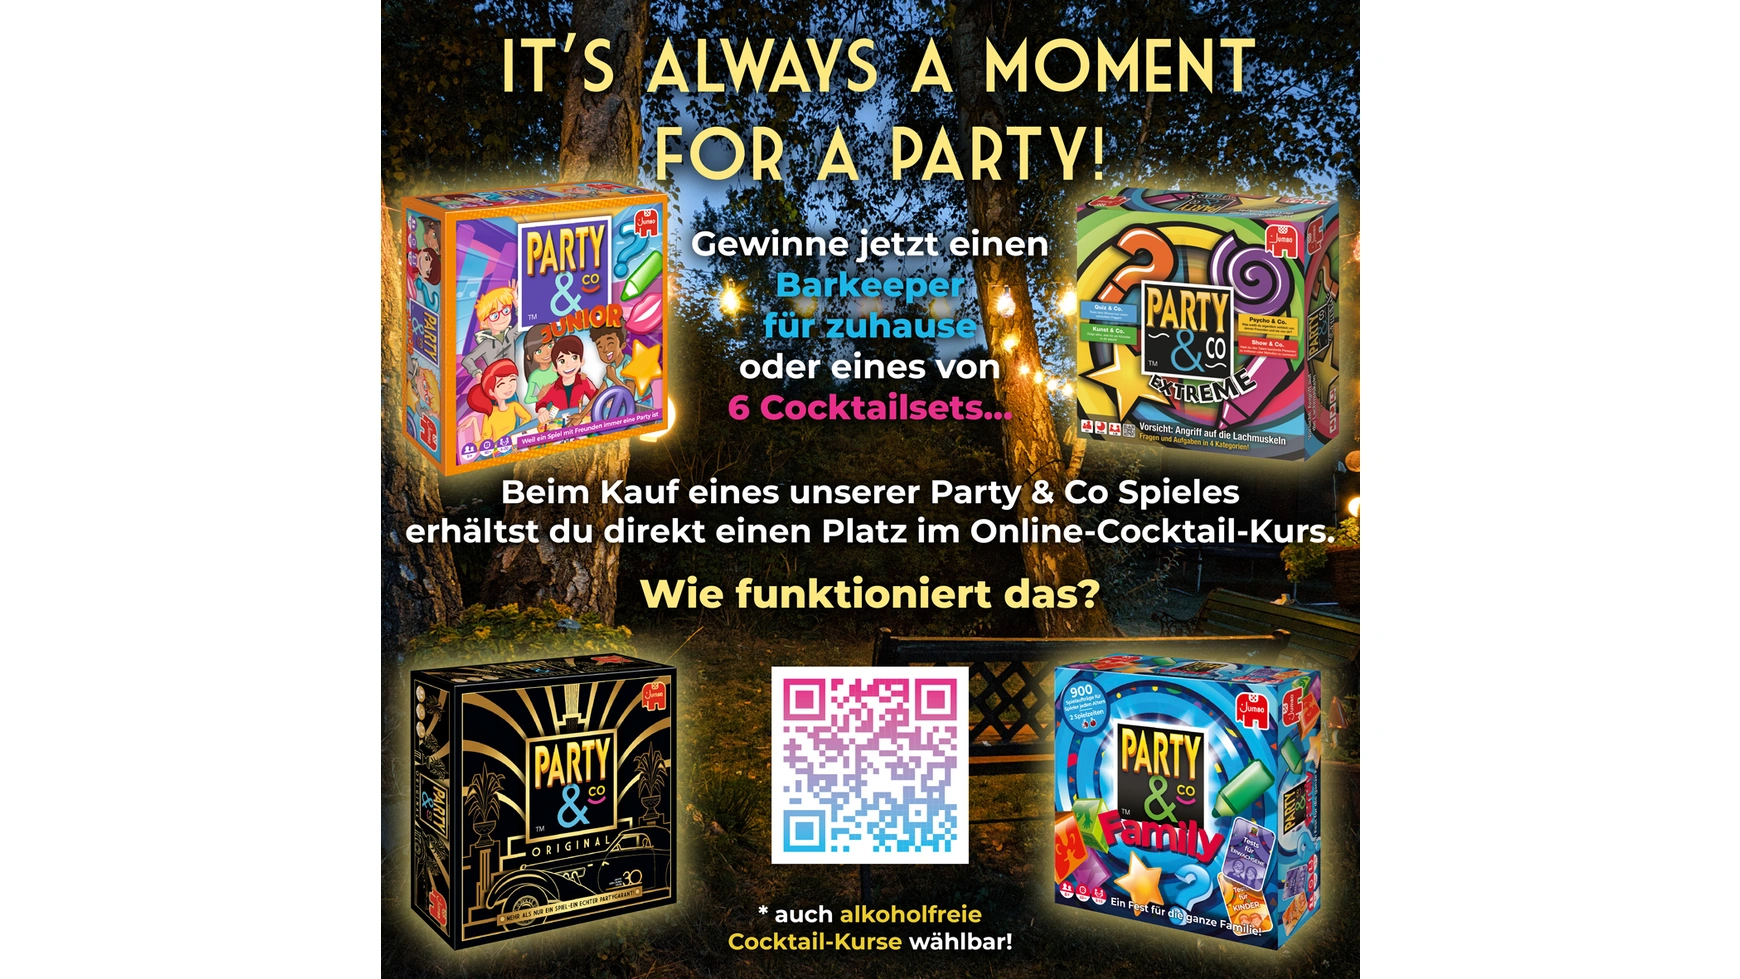 Jumbo Spiele Party & Co Оригинальное празднование 30-летия